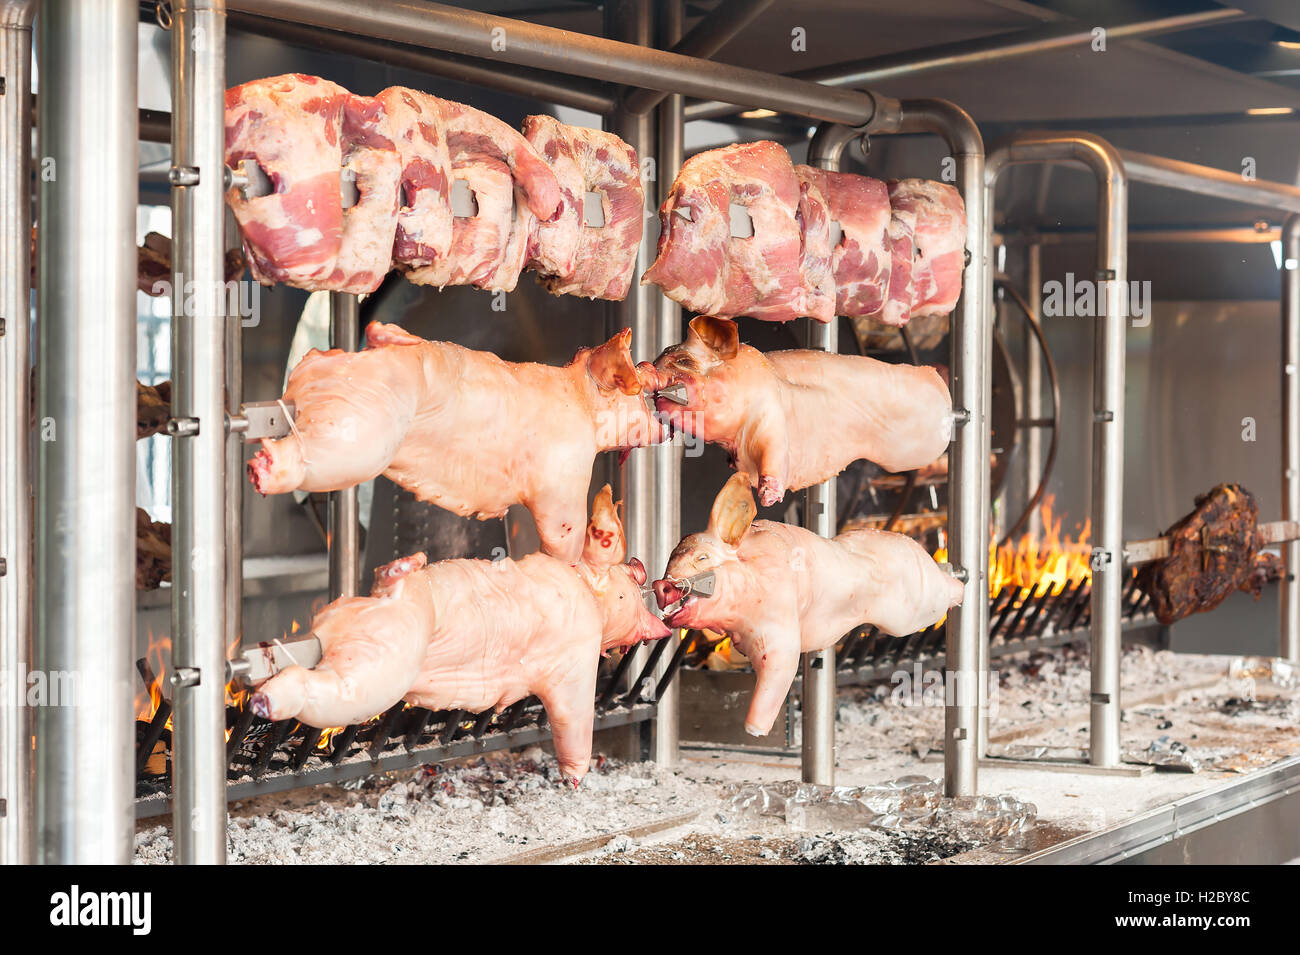 Carcasses de porc et autres viandes préparées sur brochette. La cuisson sur le gril et le feu. Banque D'Images